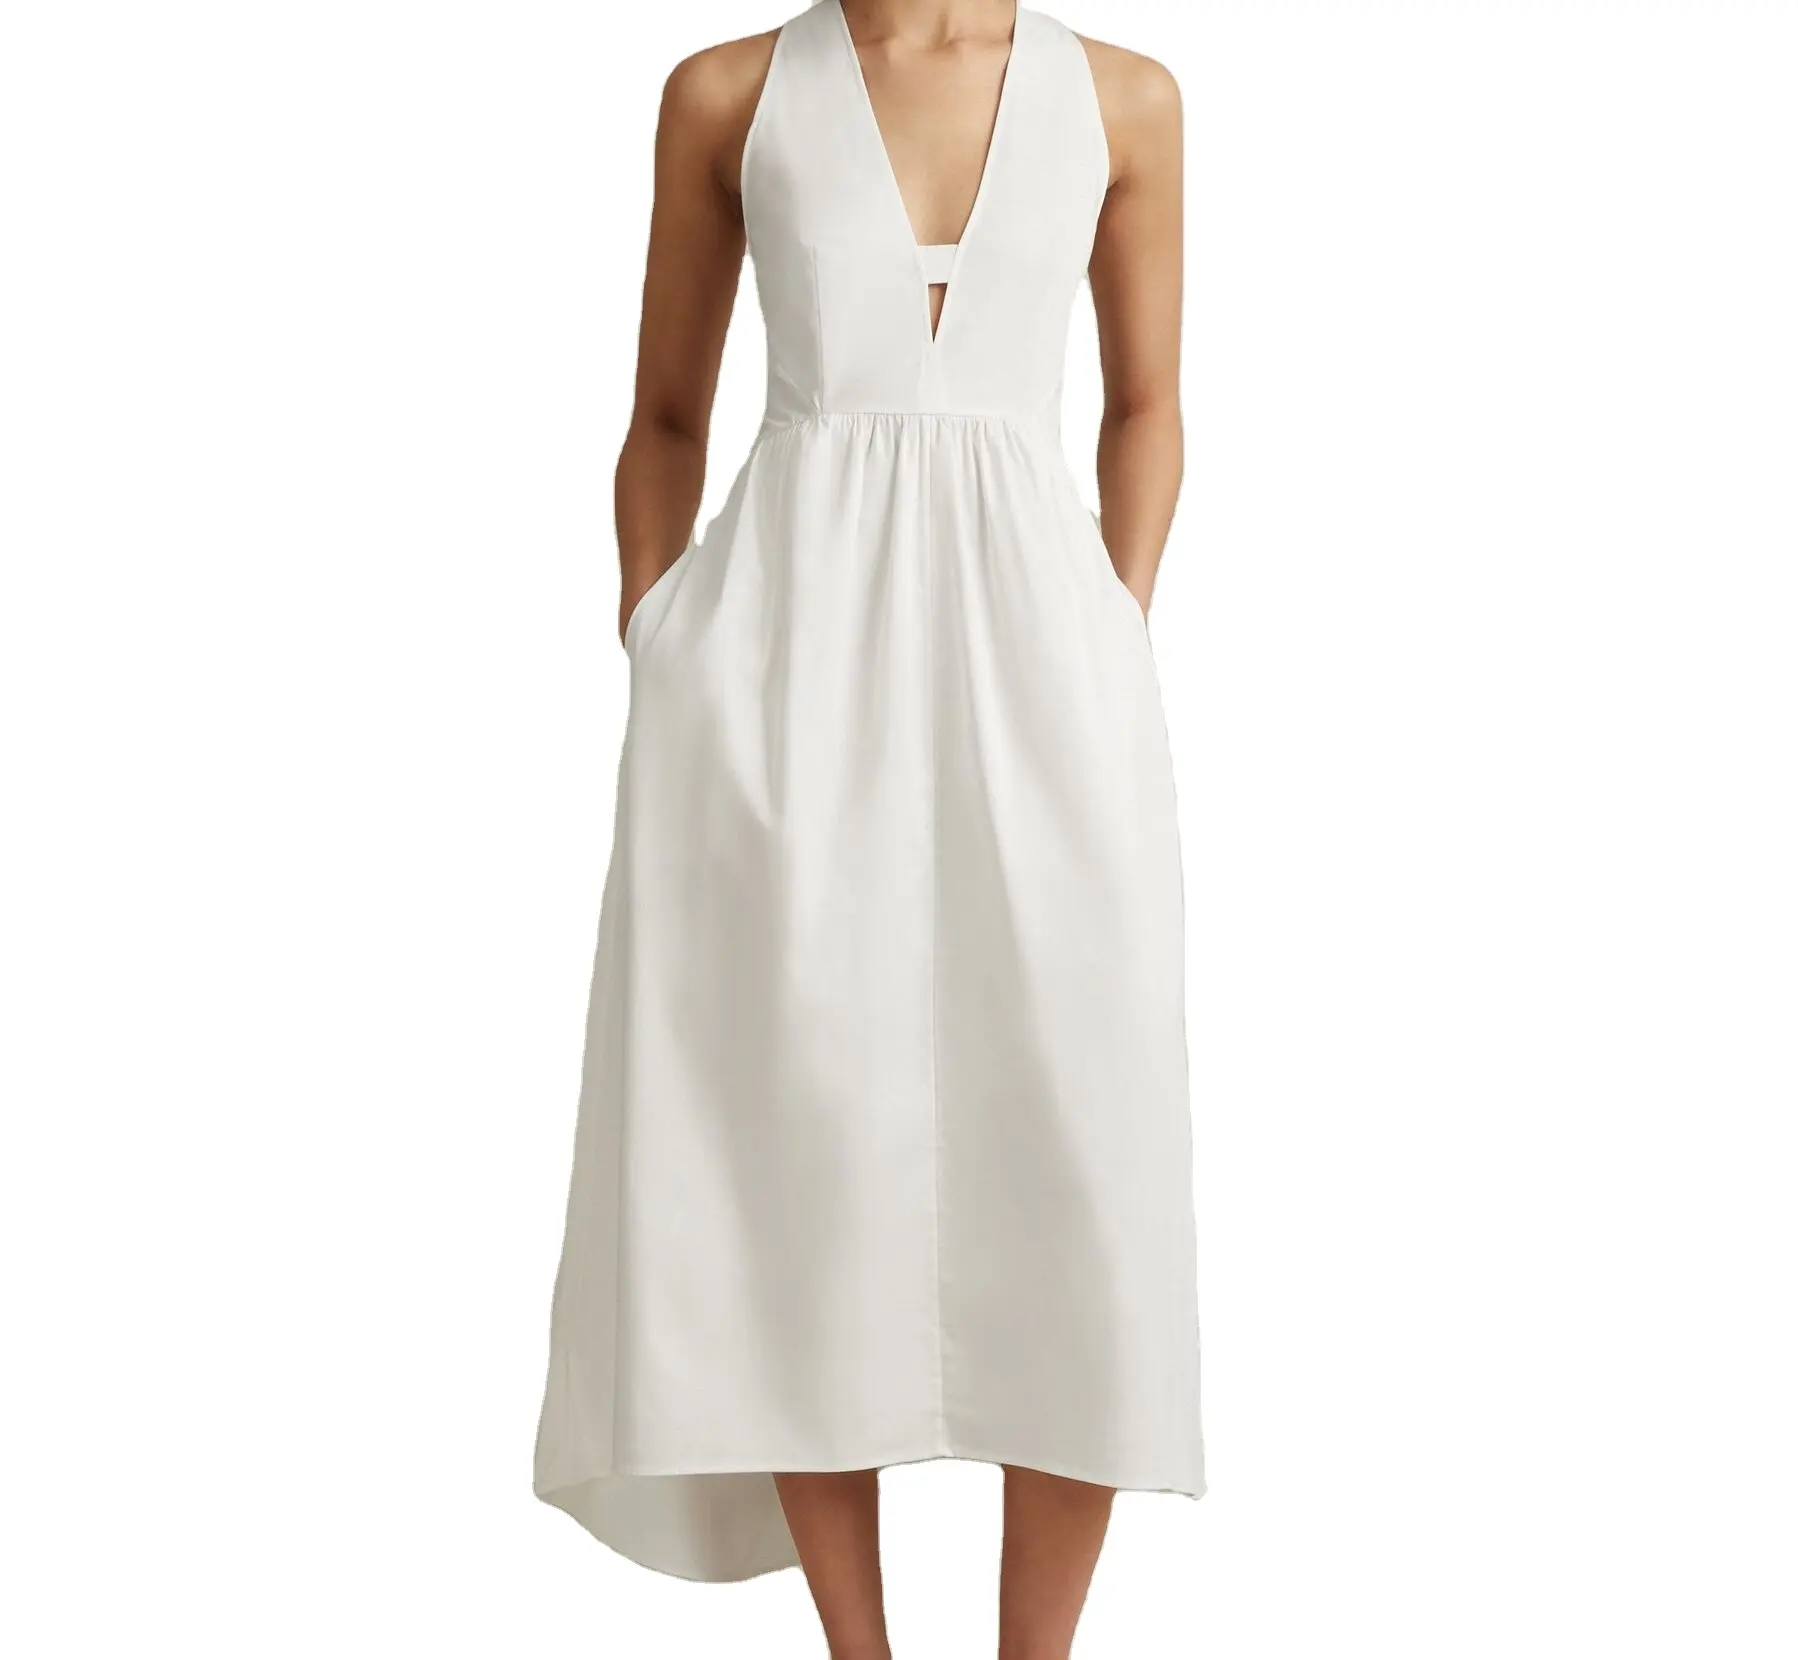 Sıcak satış yüksek kalite kolsuz beyaz elbise uzun keten moda kadınlar için rahat elbise